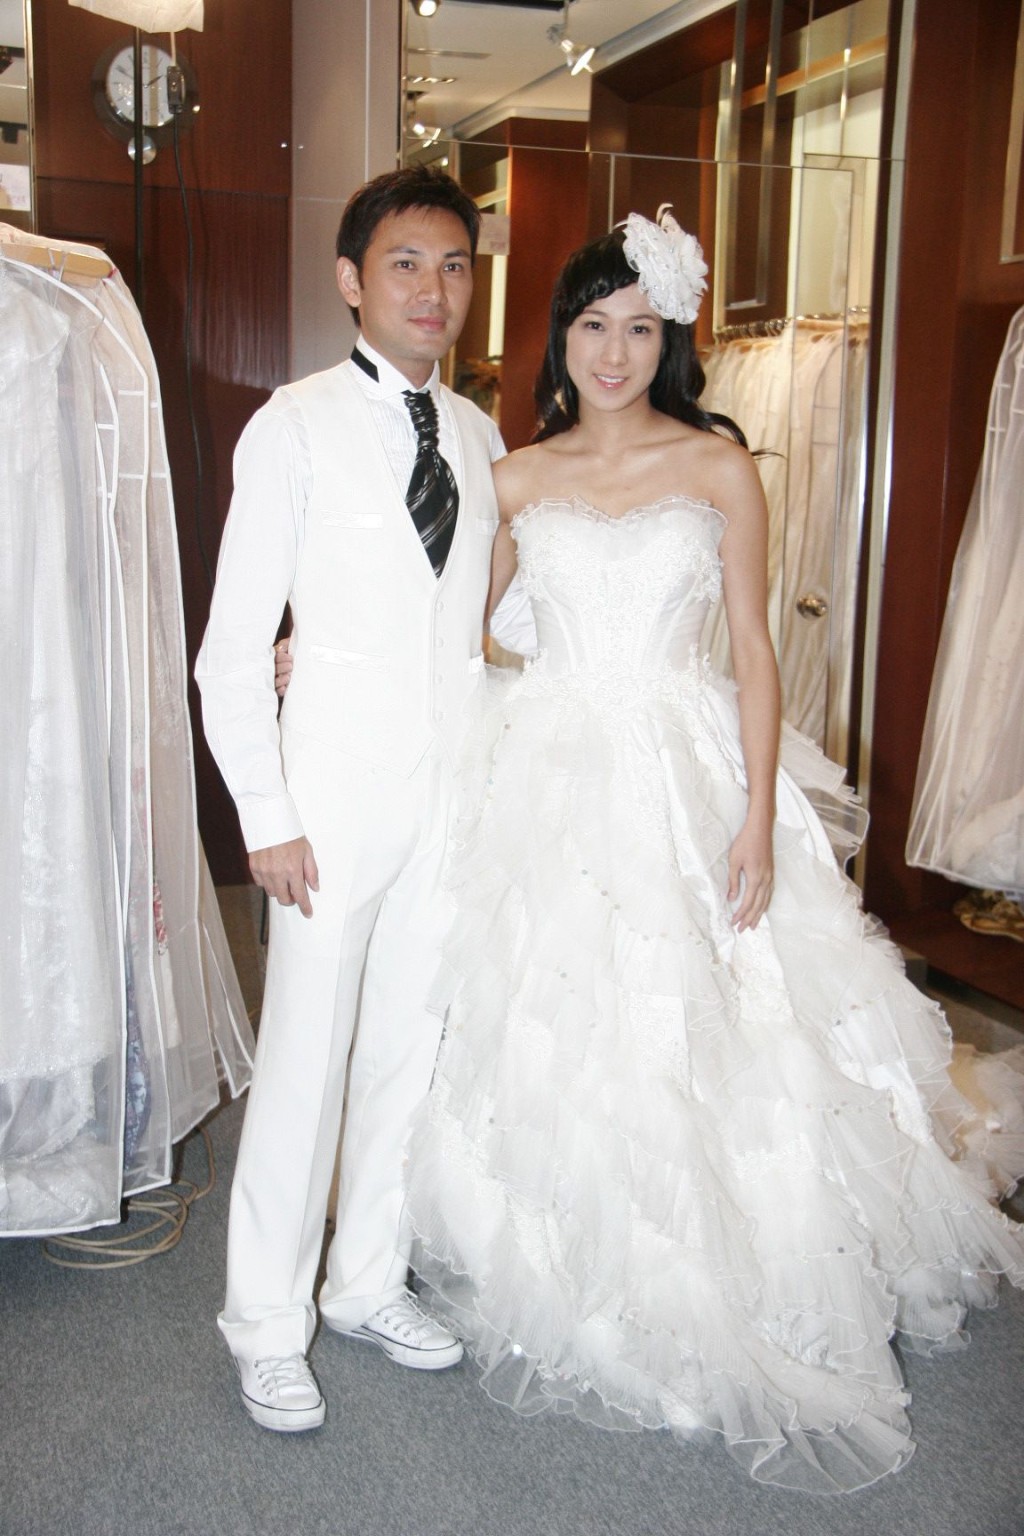 鍾嘉欣在第二輯原本準備嫁林文龍。